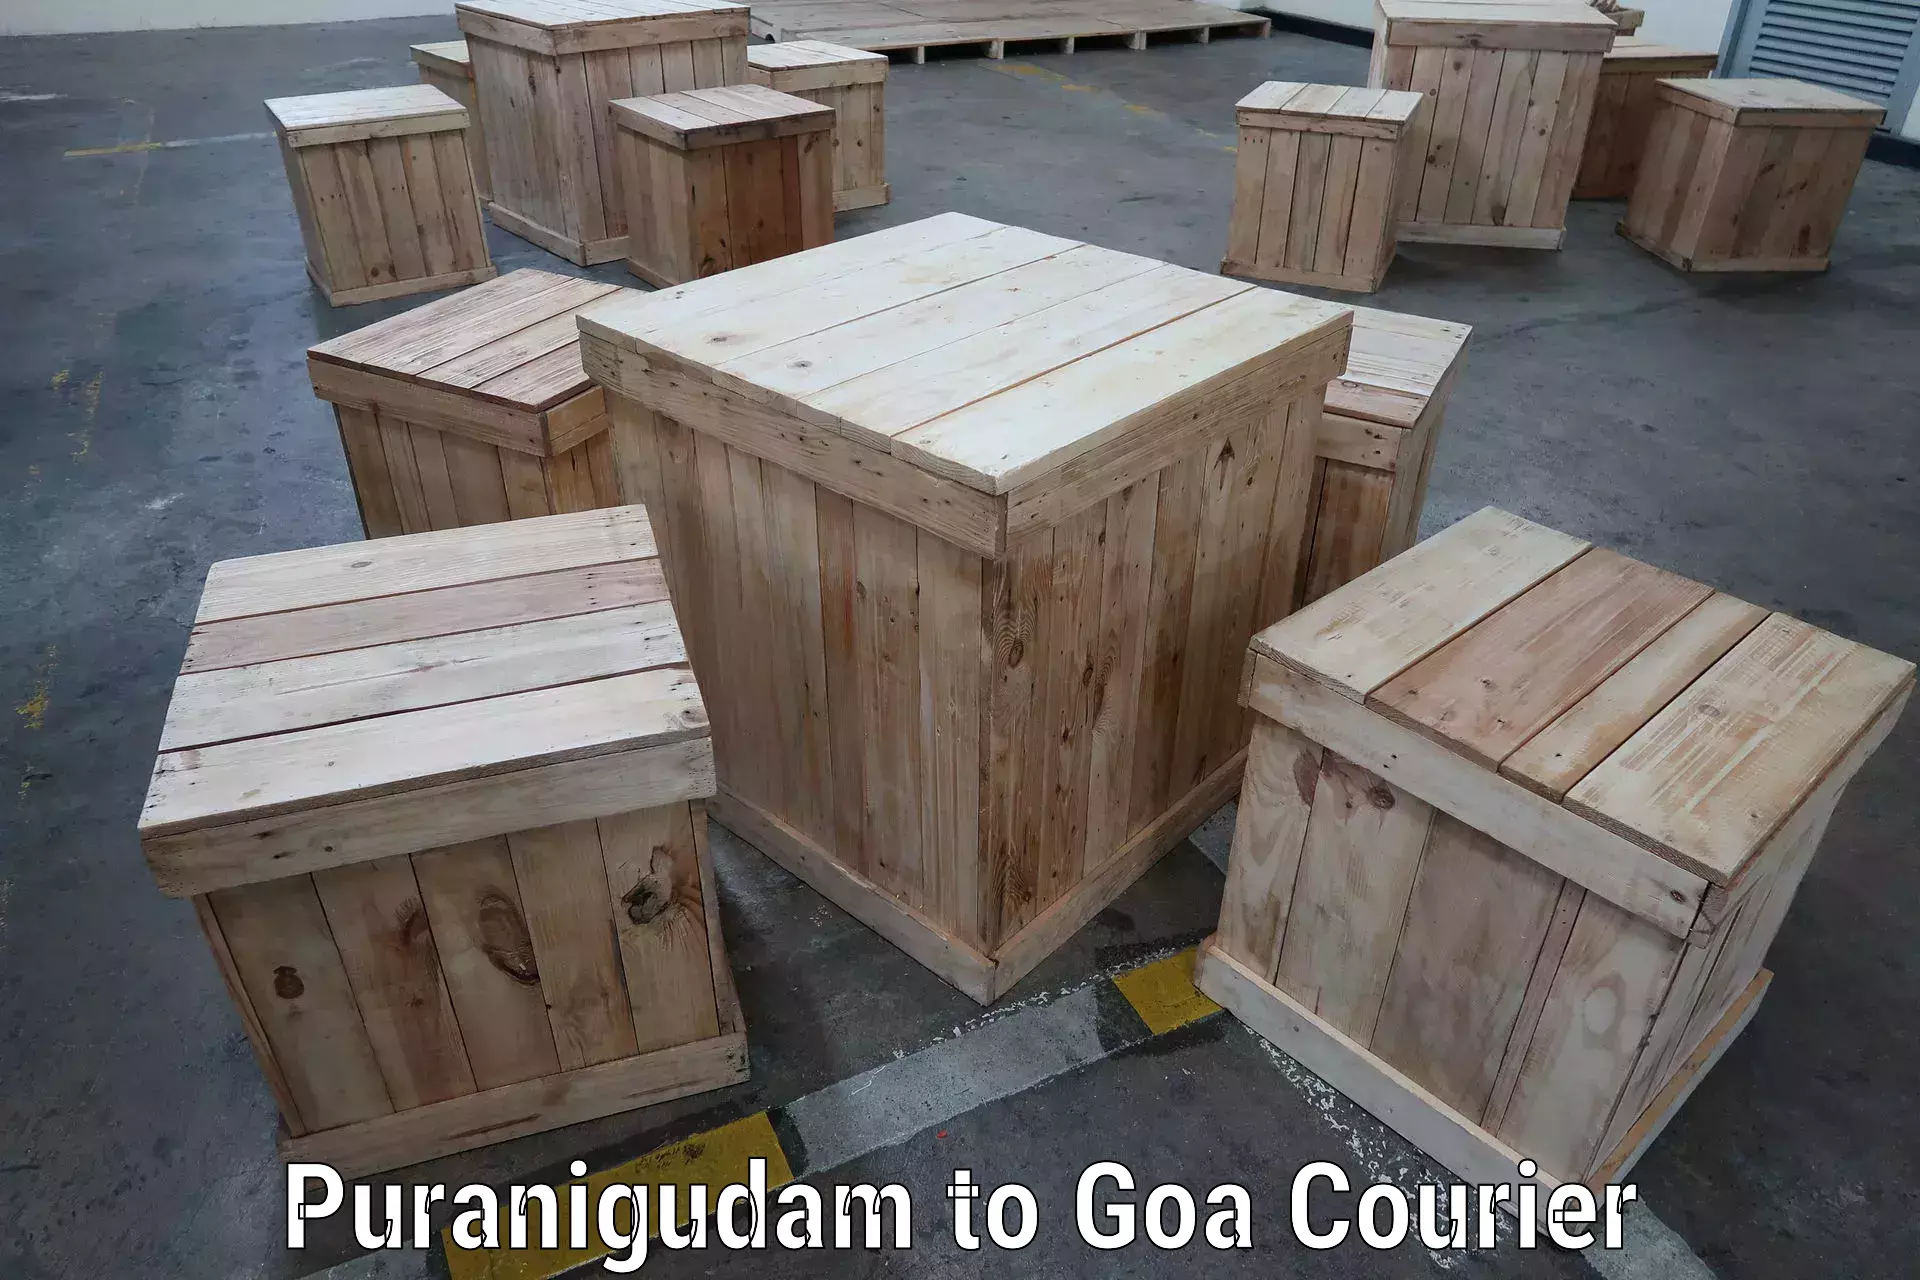 Shipping and handling in Puranigudam to Goa